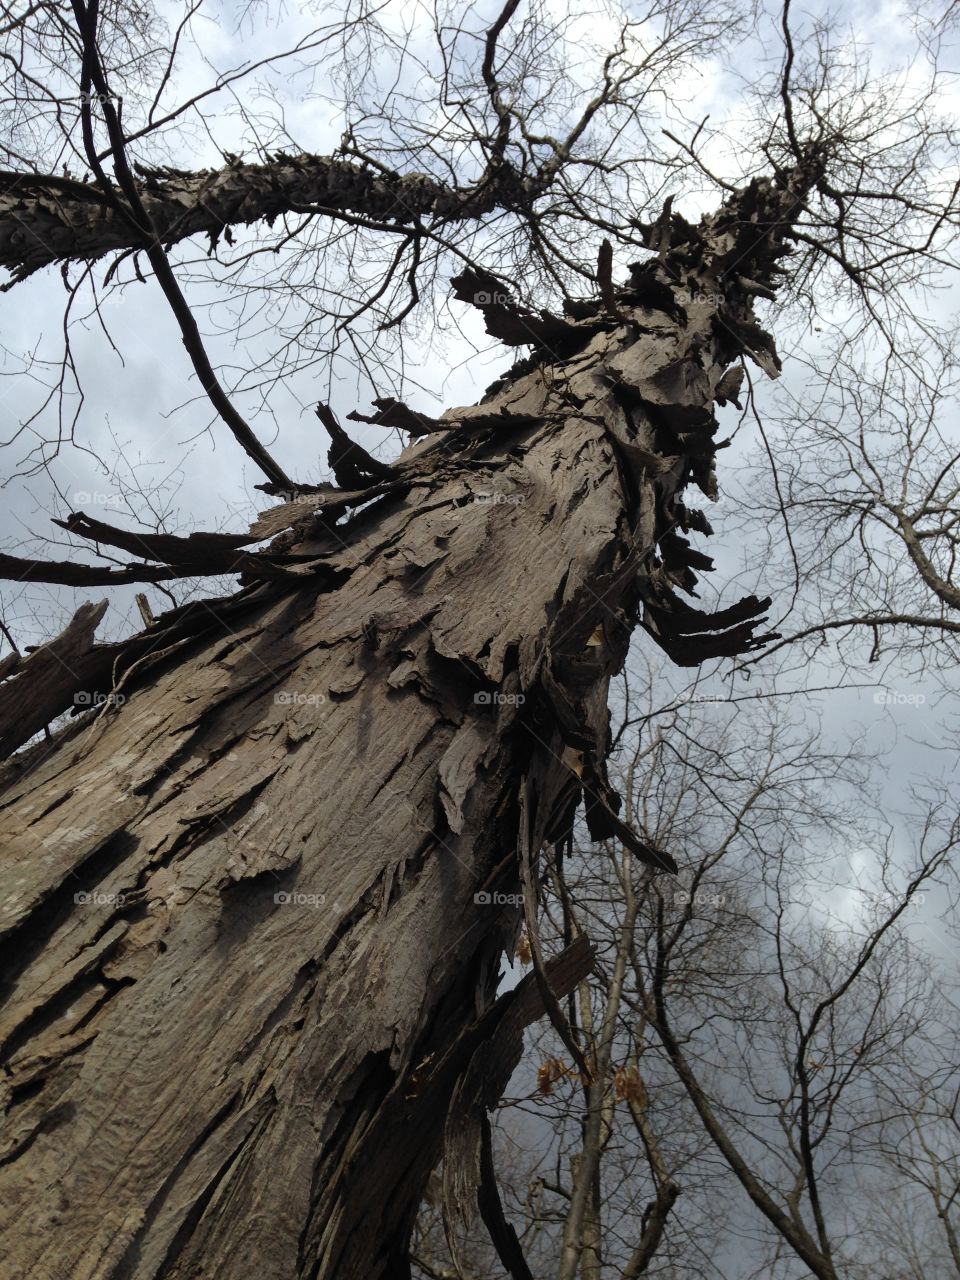 Shag bark hickory. Black and white tree 